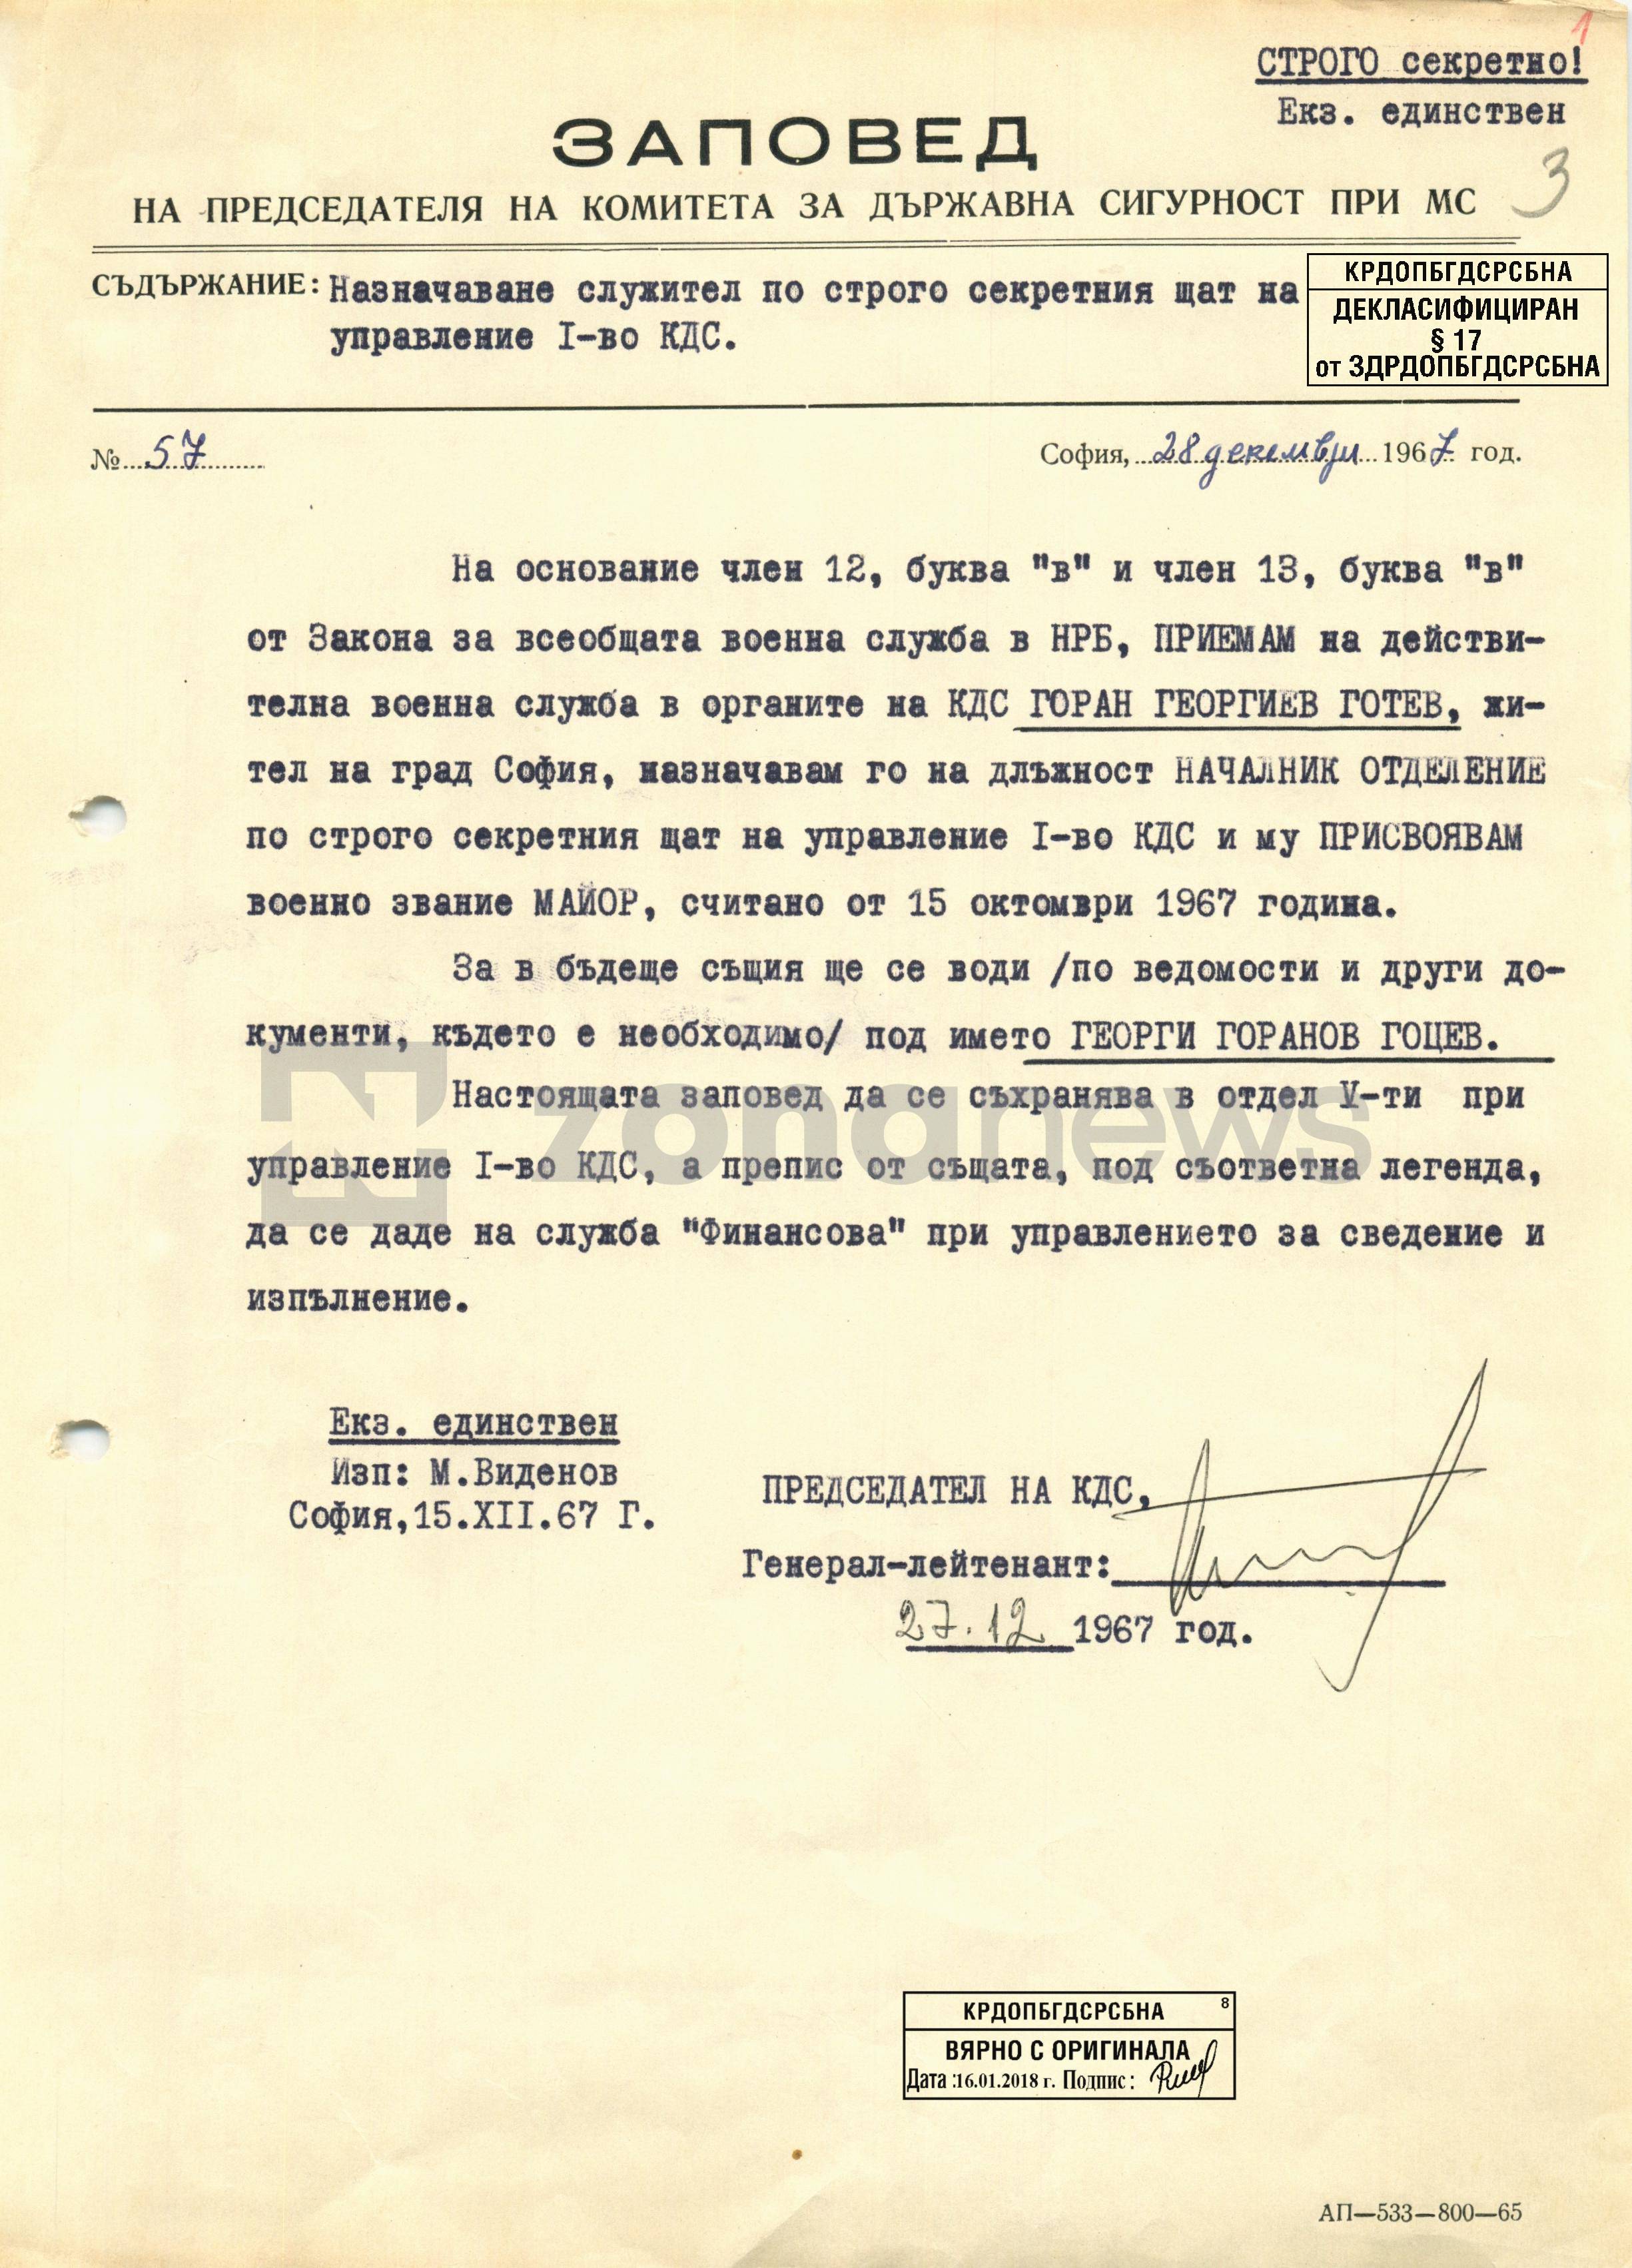 Заповед за назначаването на Горан Готев за началник отделение по строго секретния щат